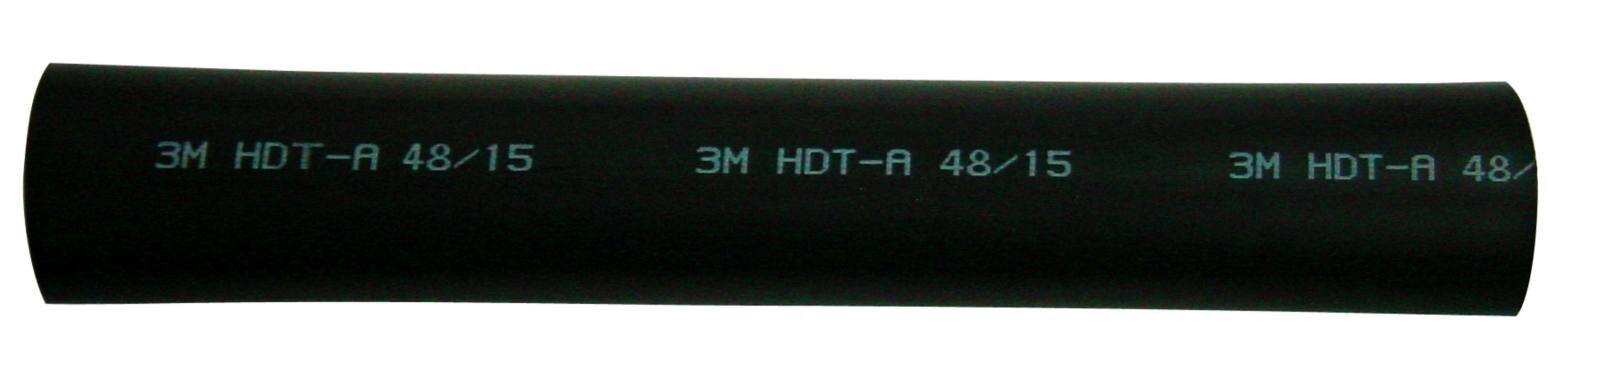  3M HDT-A Paksuseinäinen lämpökutisteputki liimalla, musta, 12/3 mm, 1 m